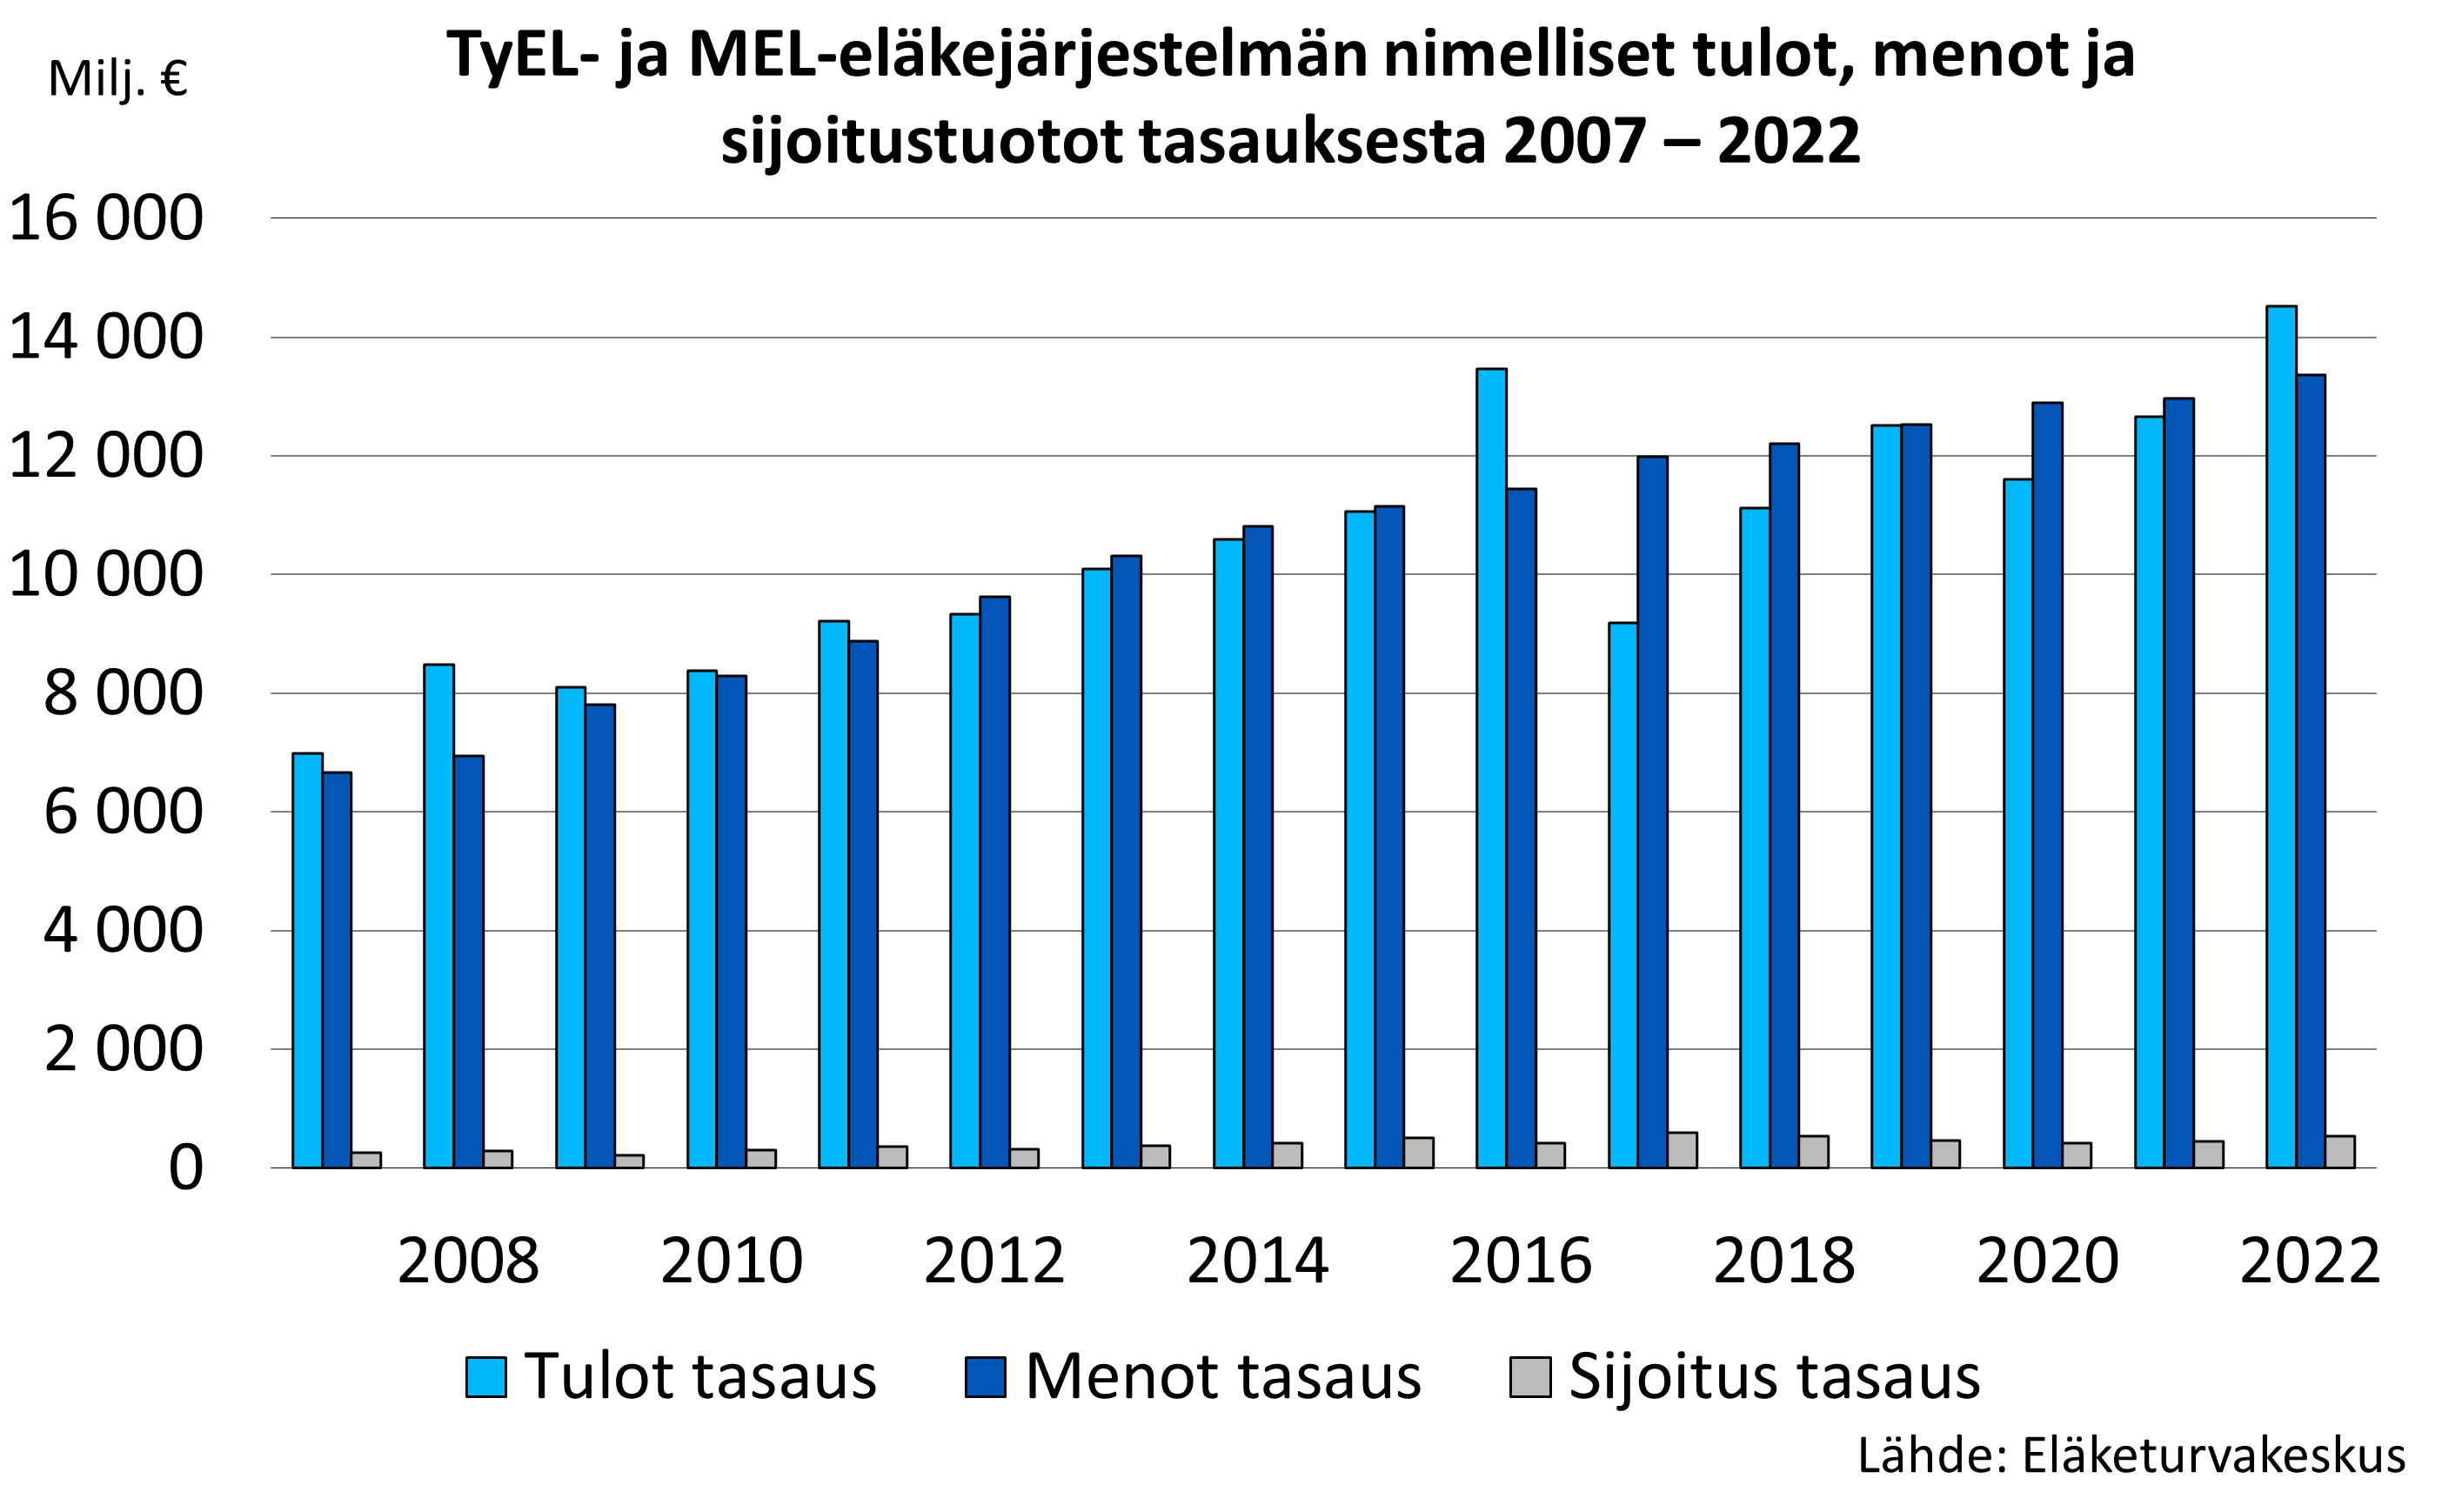 TyEL- ja MEL-eläkejärjestelmän nimelliset tulot, menot ja sijoitustuotot tasauksesta 2007 – 2020